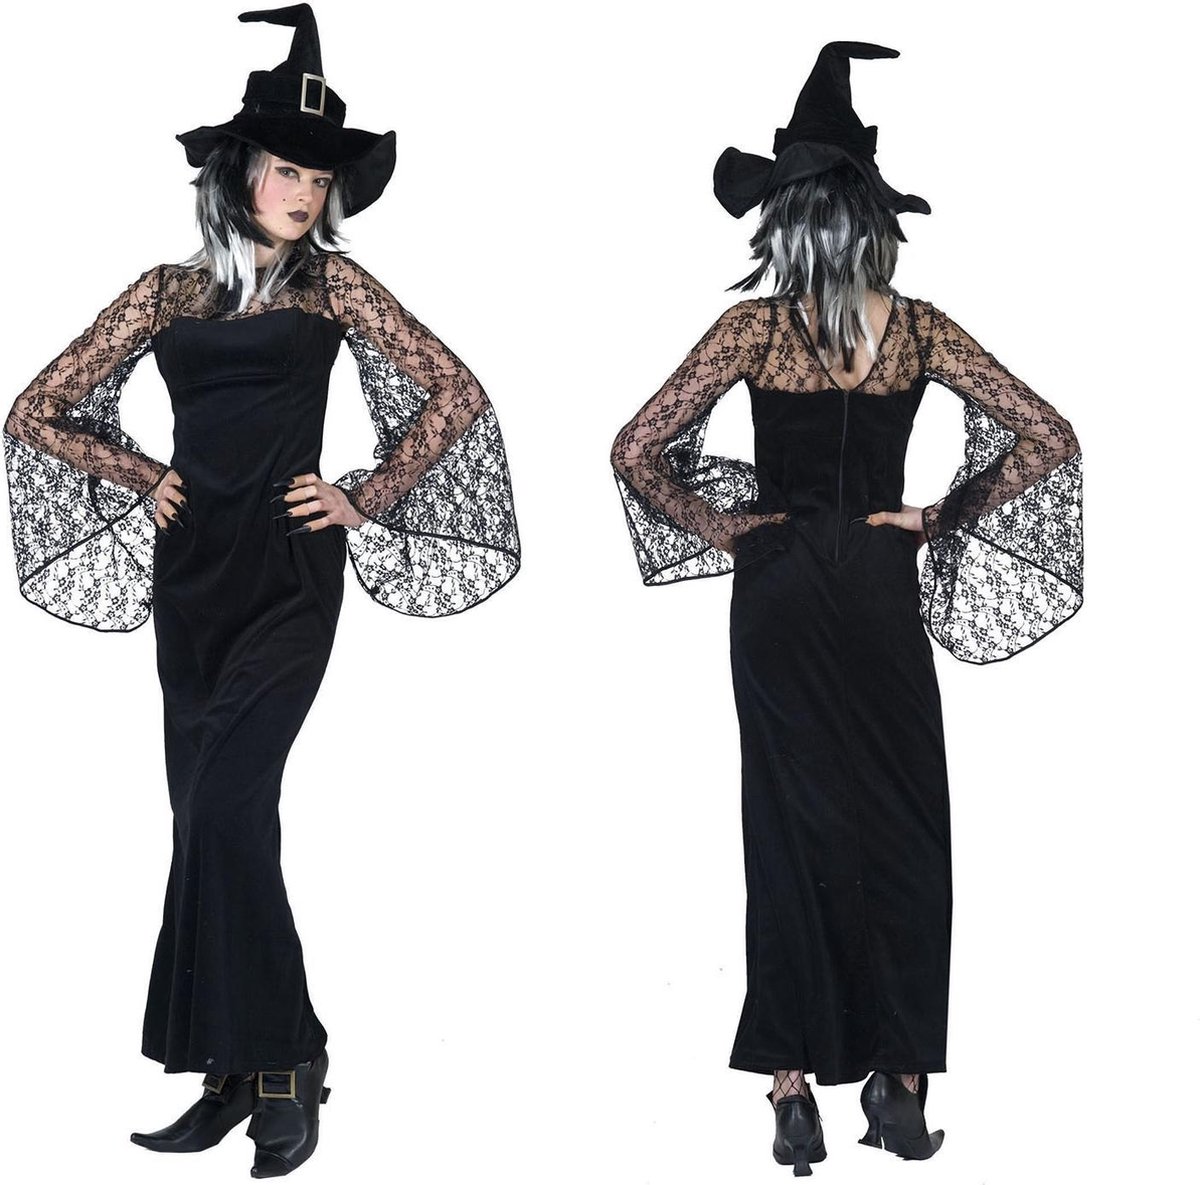 Funny Fashion - Heks & Spider Lady & Voodoo & Duistere Religie Kostuum - Gravilla De Heks - Vrouw - zwart - Maat 44-46 - Halloween - Verkleedkleding